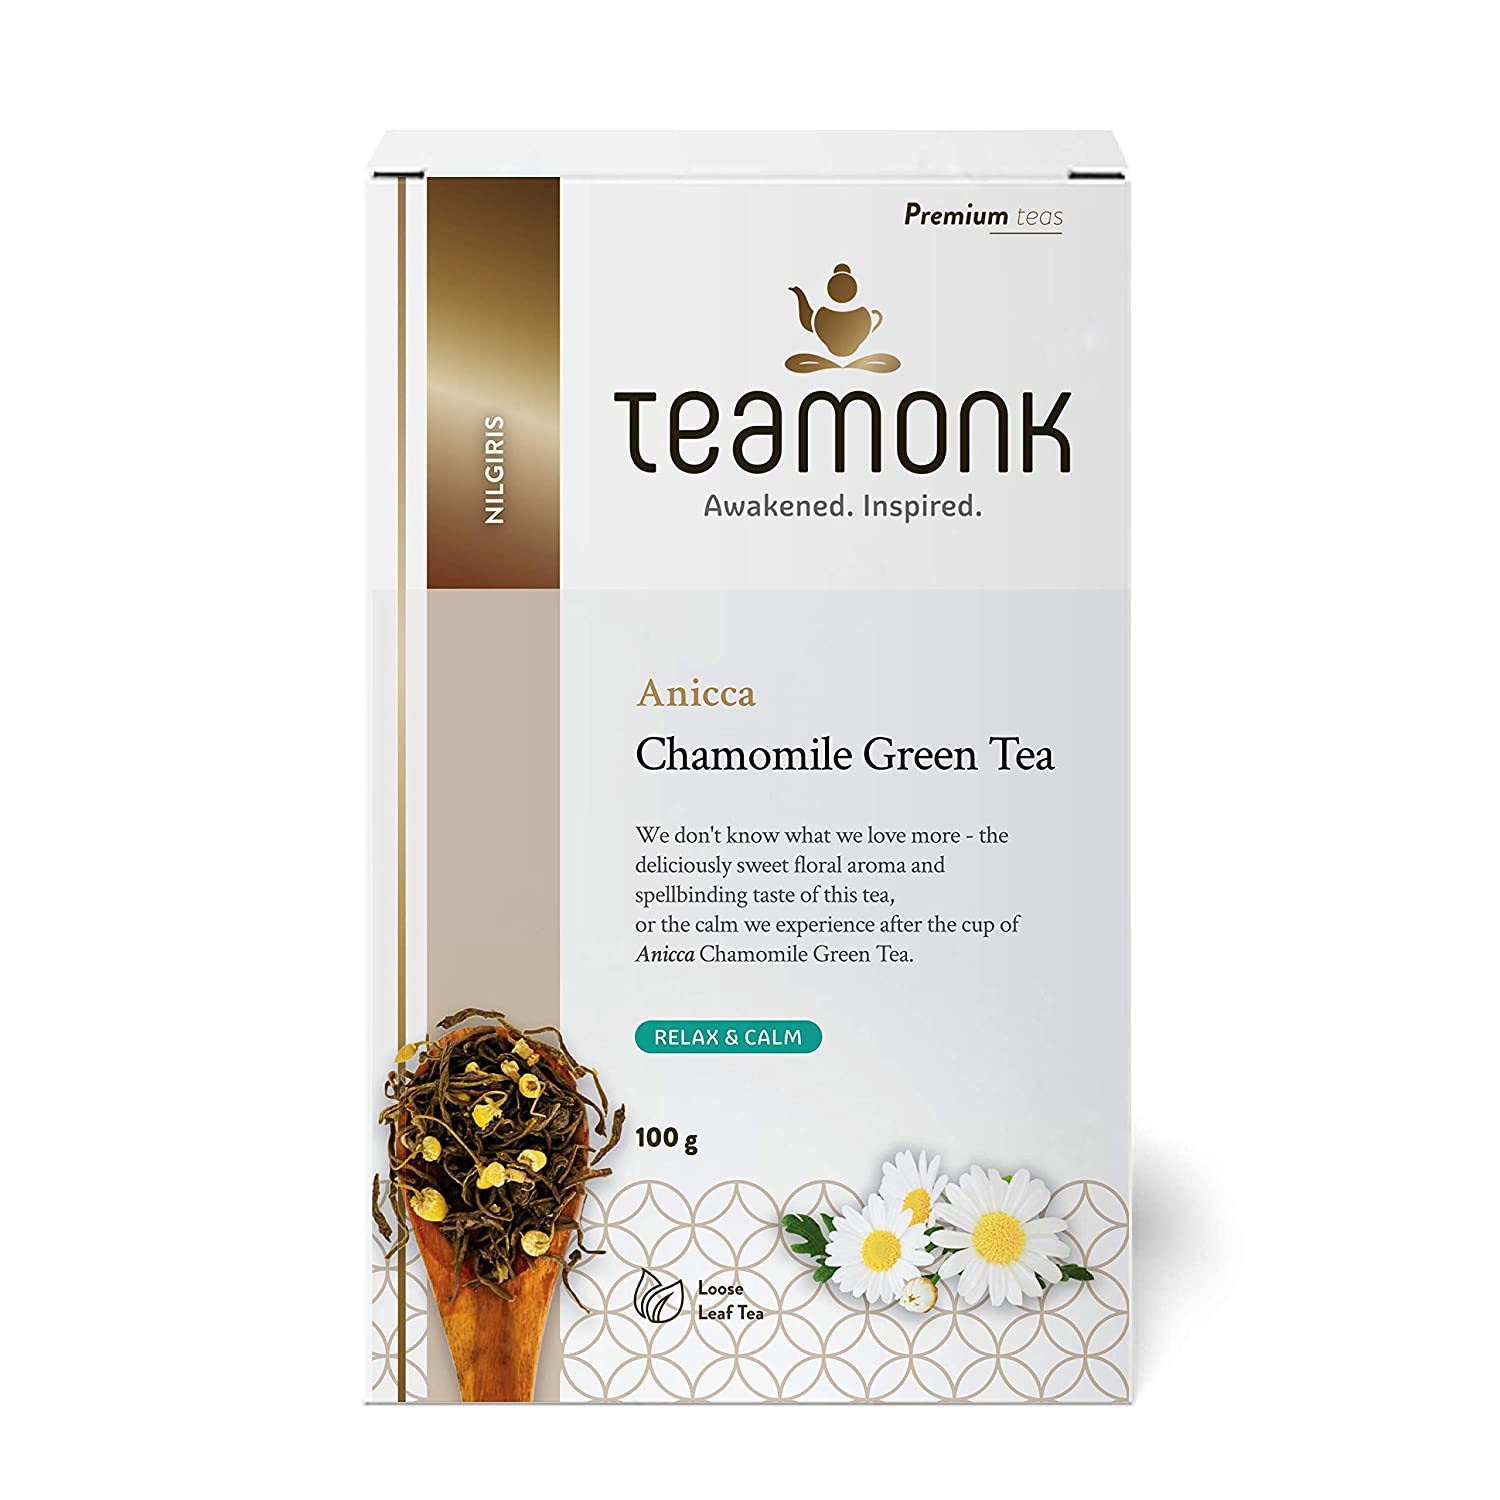 10 Best Chamomile Tea Brands in India- Top Picks in 2020